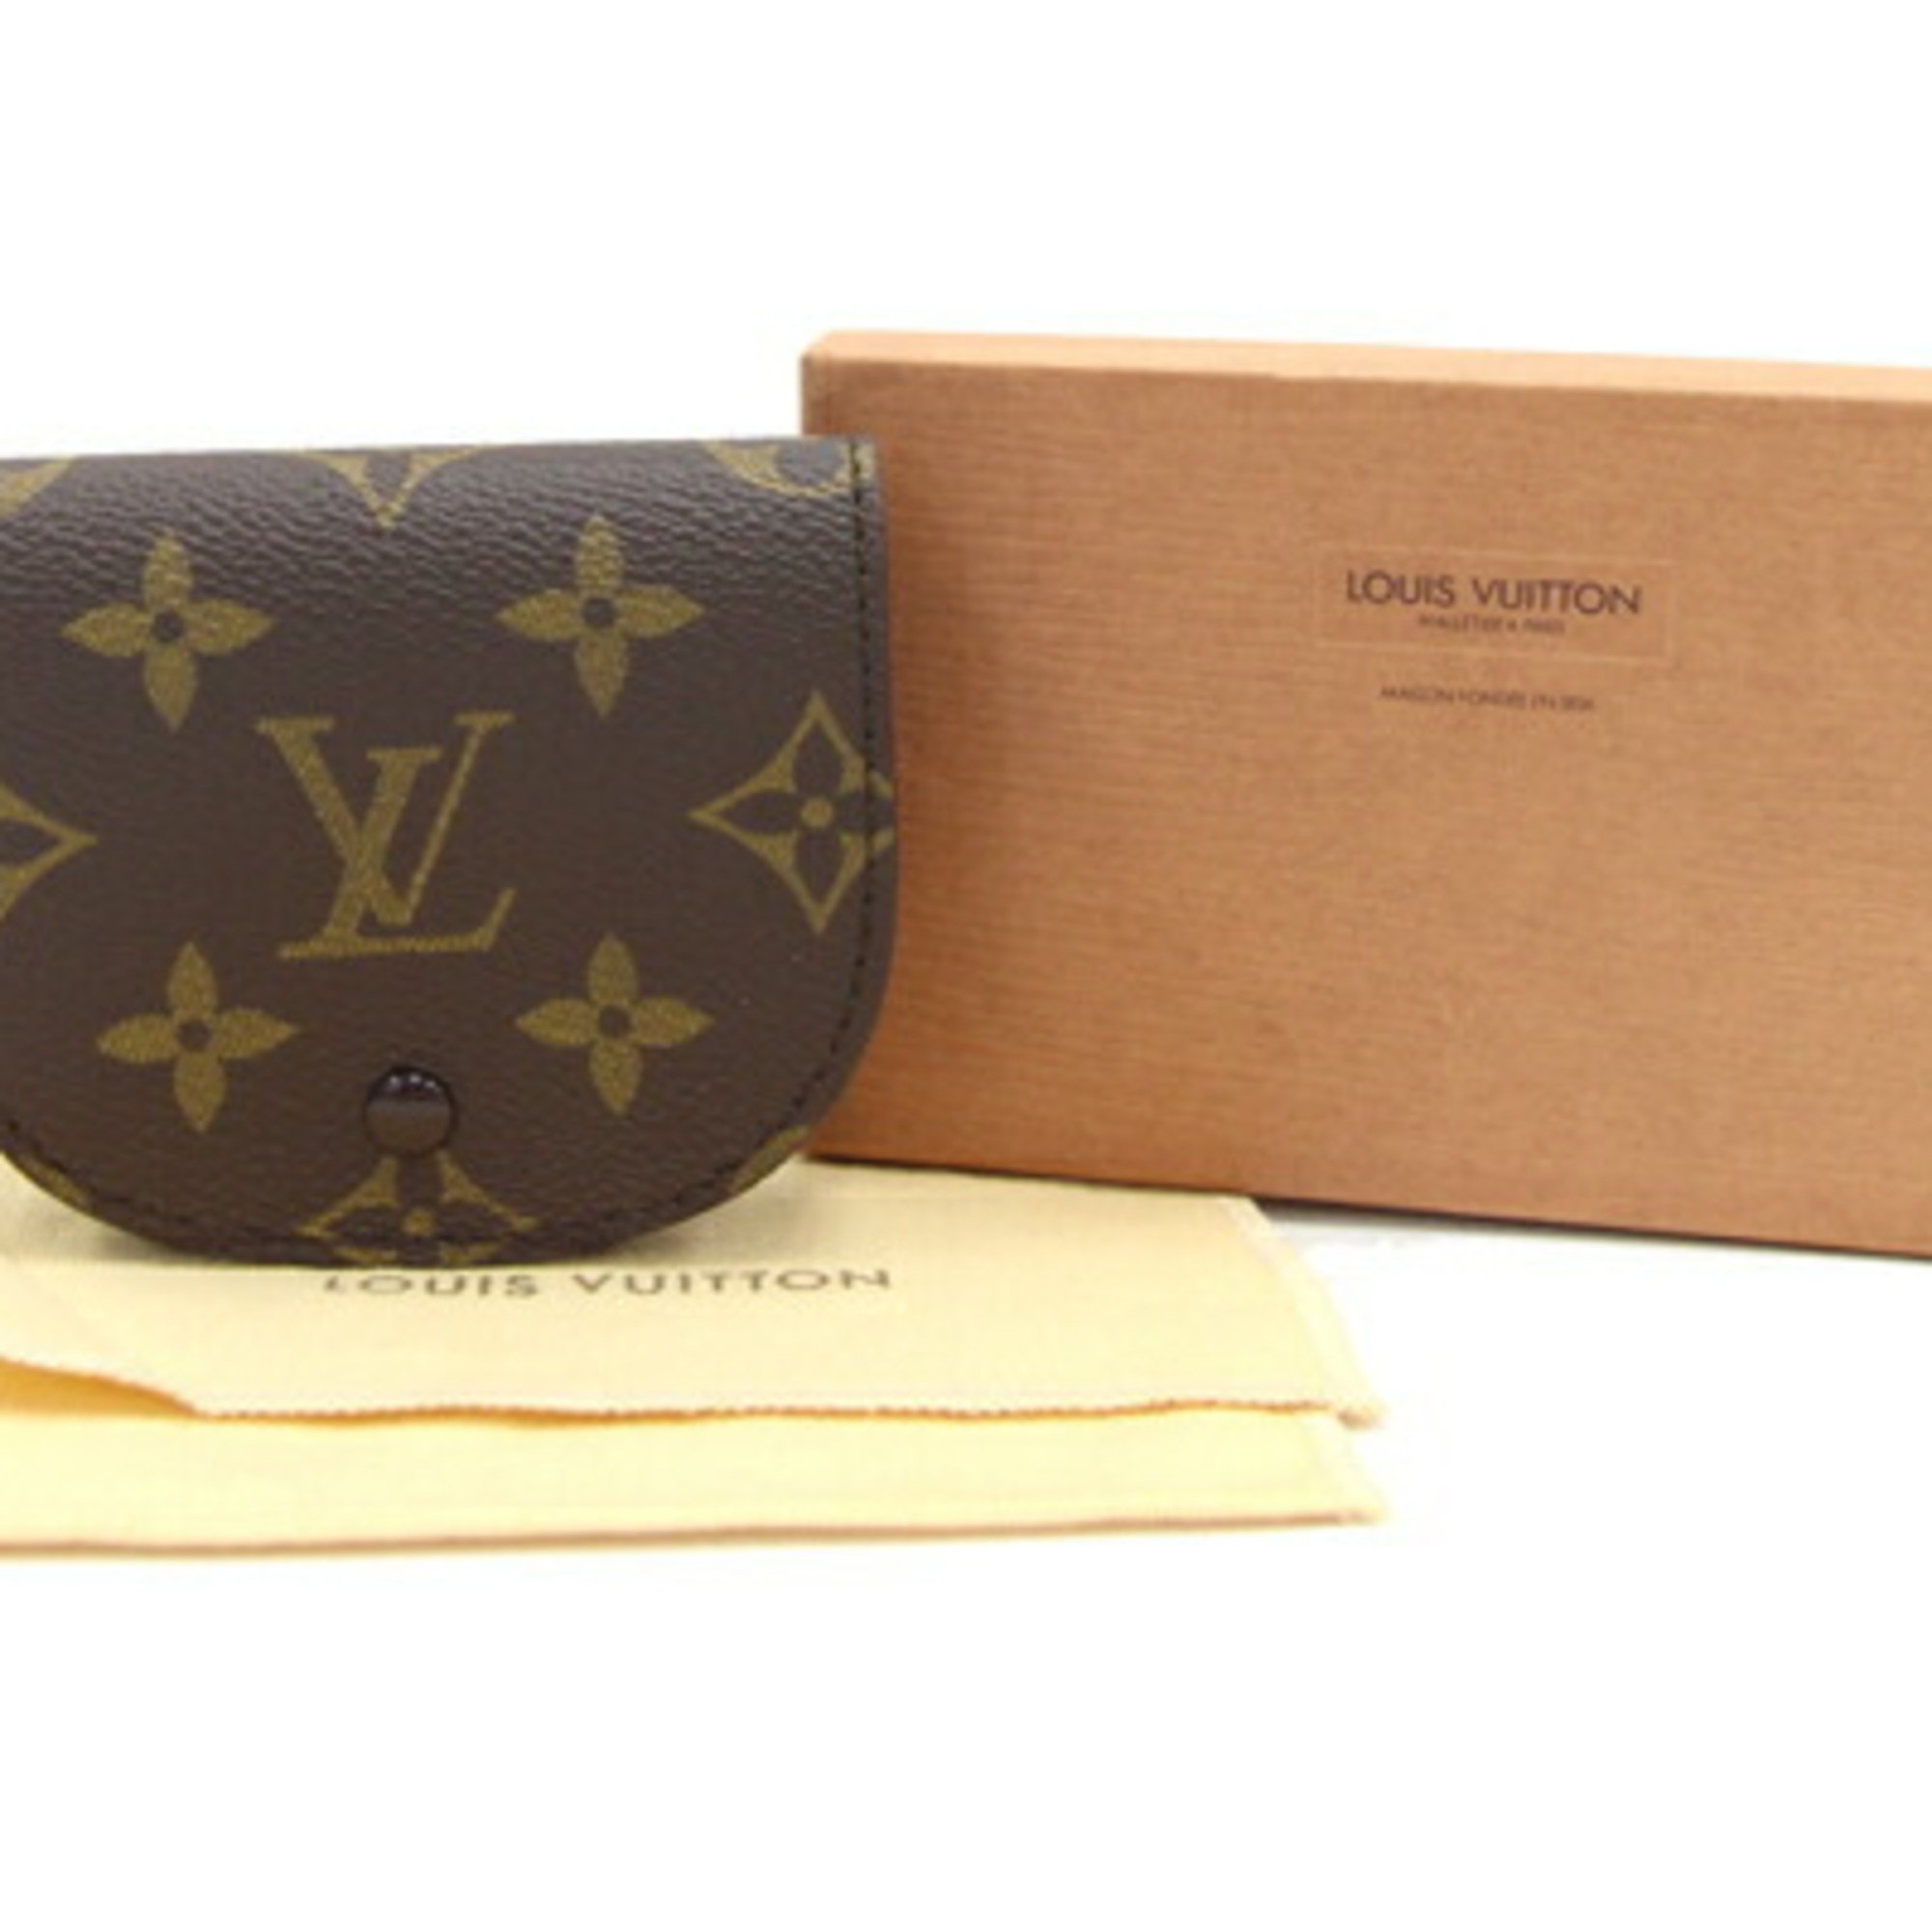 Louis Vuitton Coin Case Monogram Porto Monnaie Guze M61970 Purse Compact Wallet LV LOUIS VUITTON